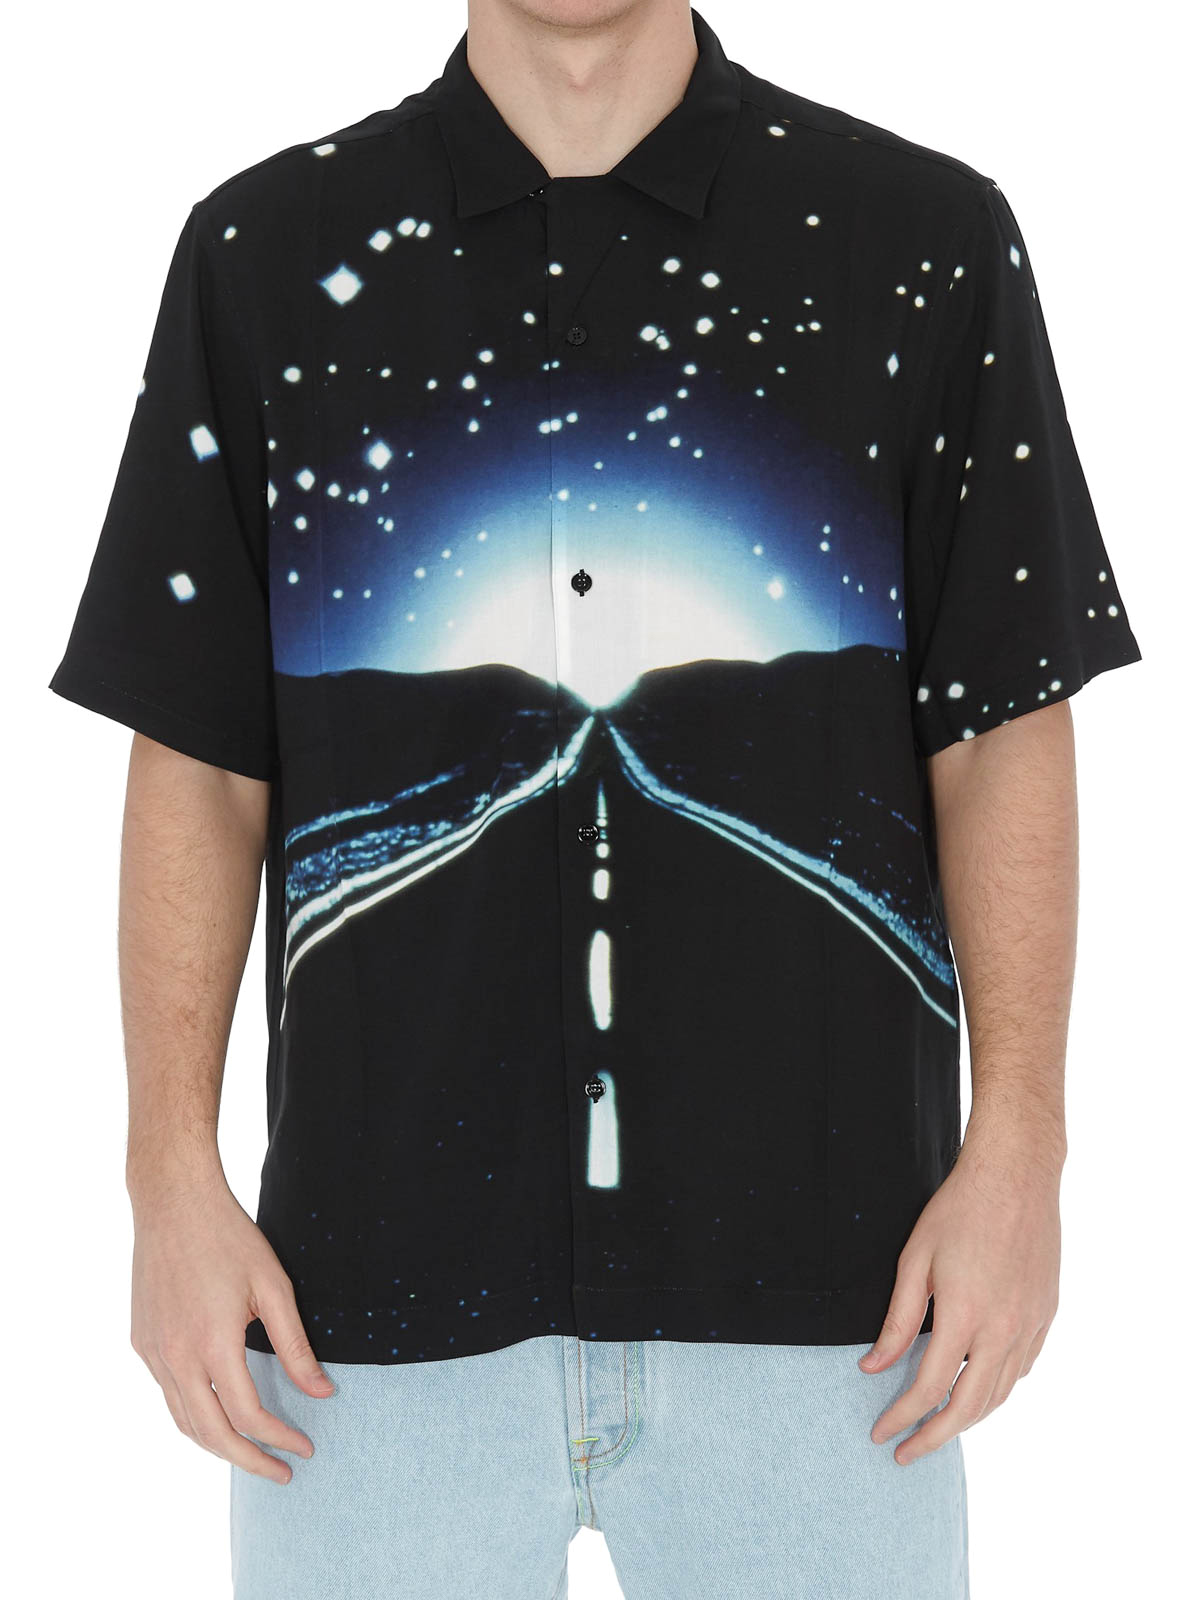 Ren Ligner hjælpemotor Shirts Marcelo Burlon - Highway black viscose shirt - CMGA035S199960708831